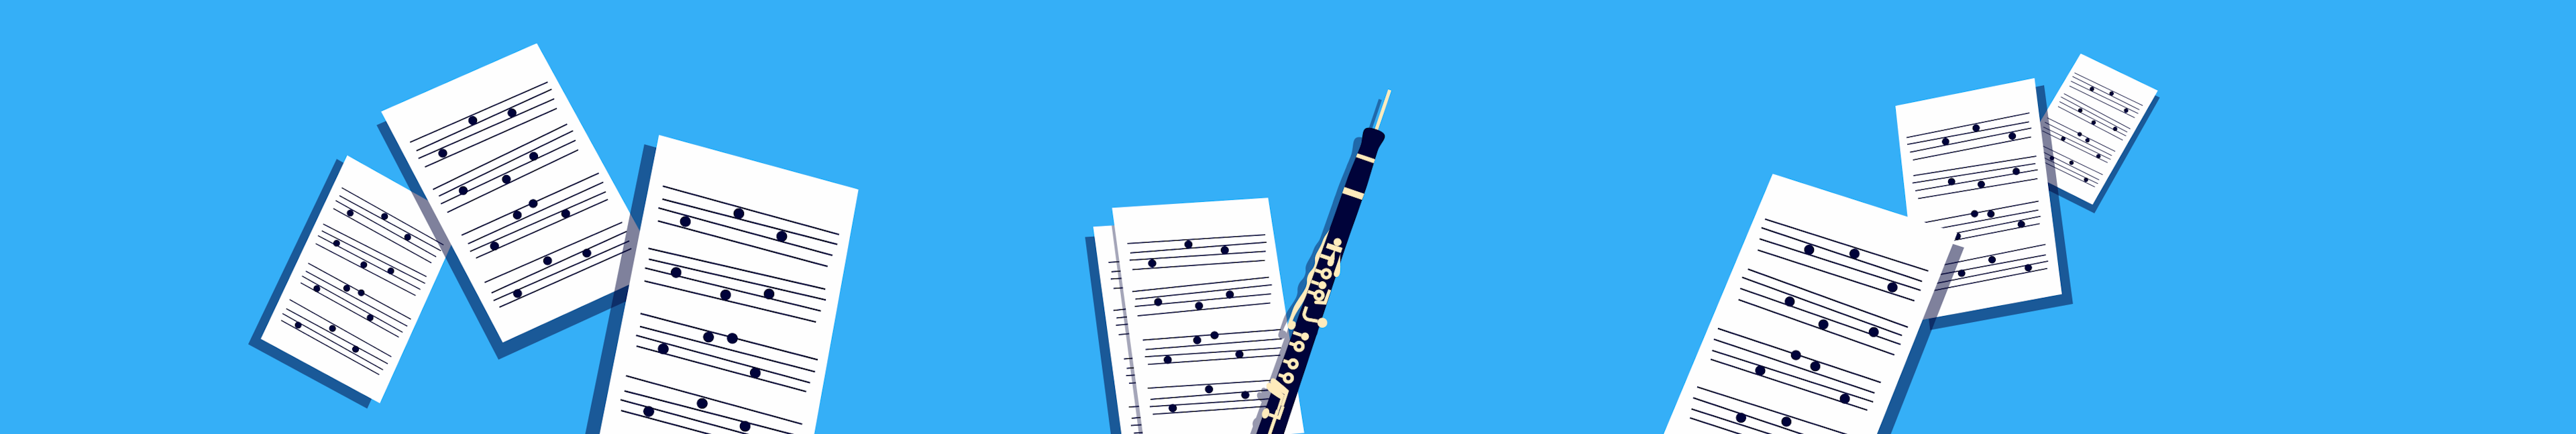 El repertorio del oboísta